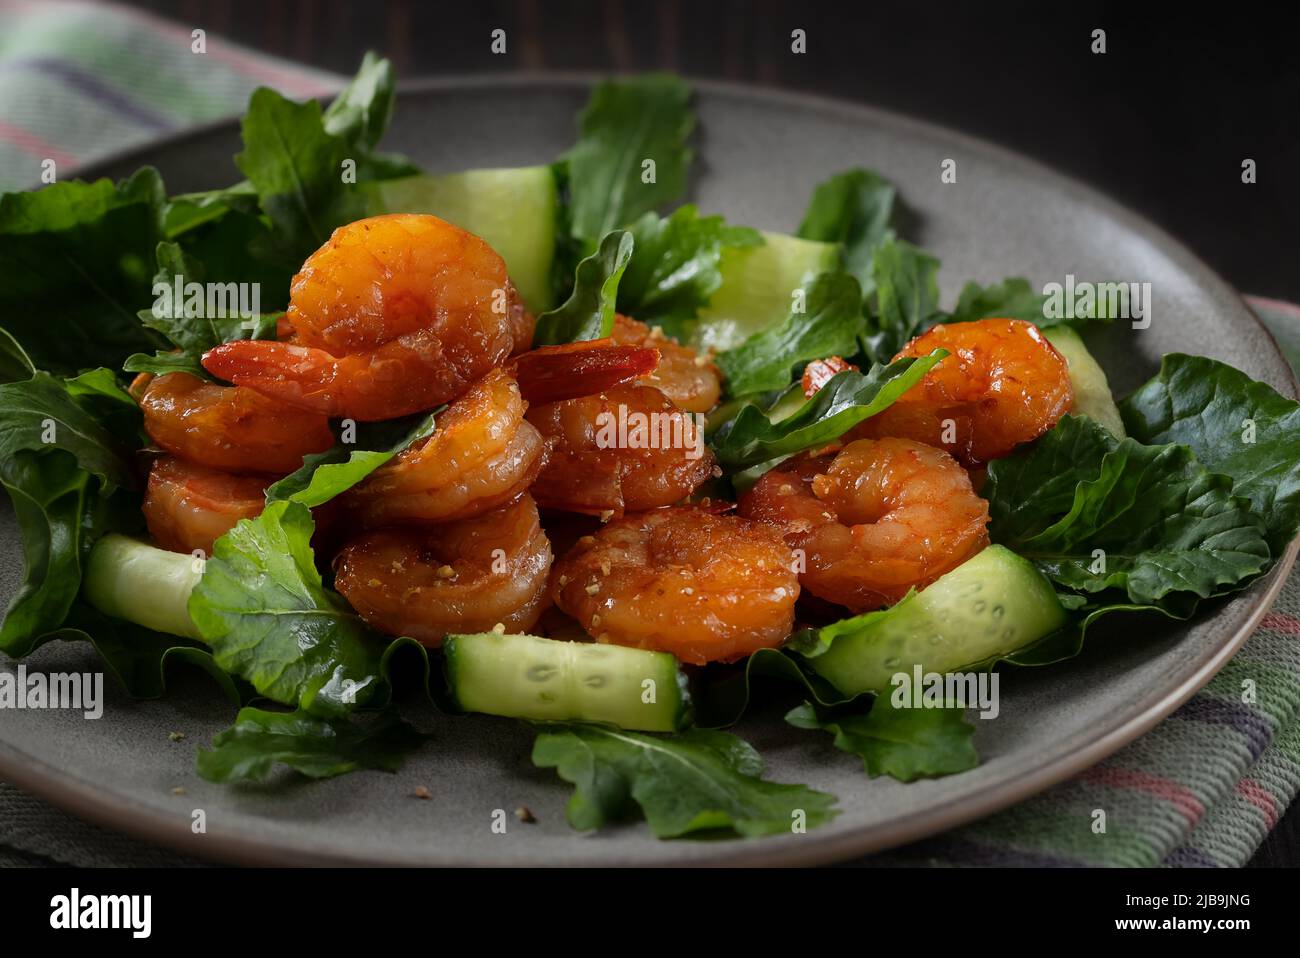 Salade fraîche aux crevettes grillées, concombres et arugula magnifiquement servis sur une assiette. Banque D'Images